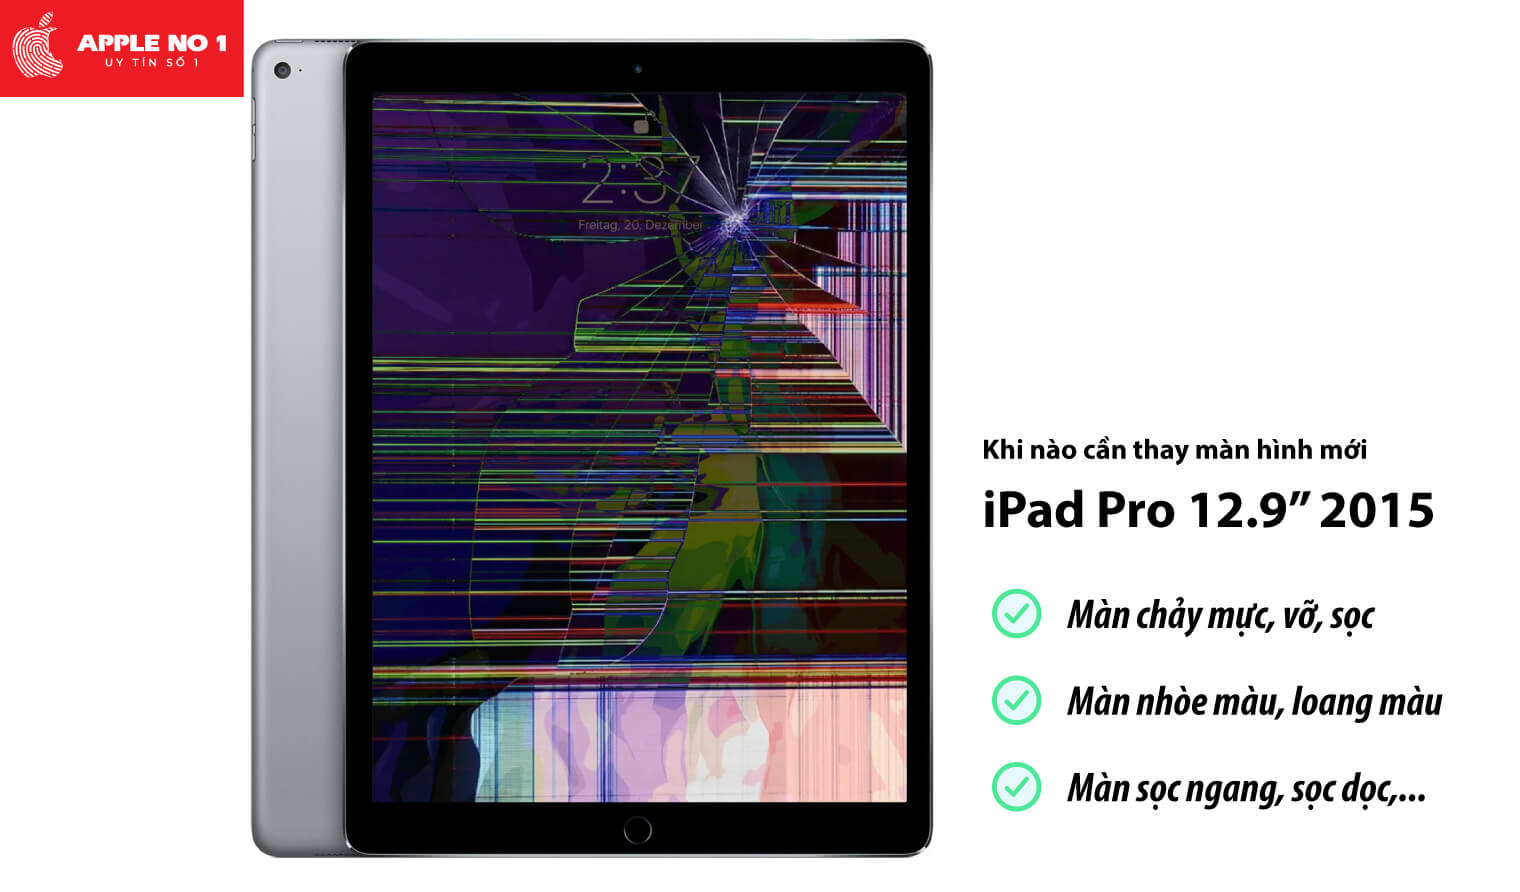 Thay màn hình iPad Pro 12.9 inch 2015 khi nào?